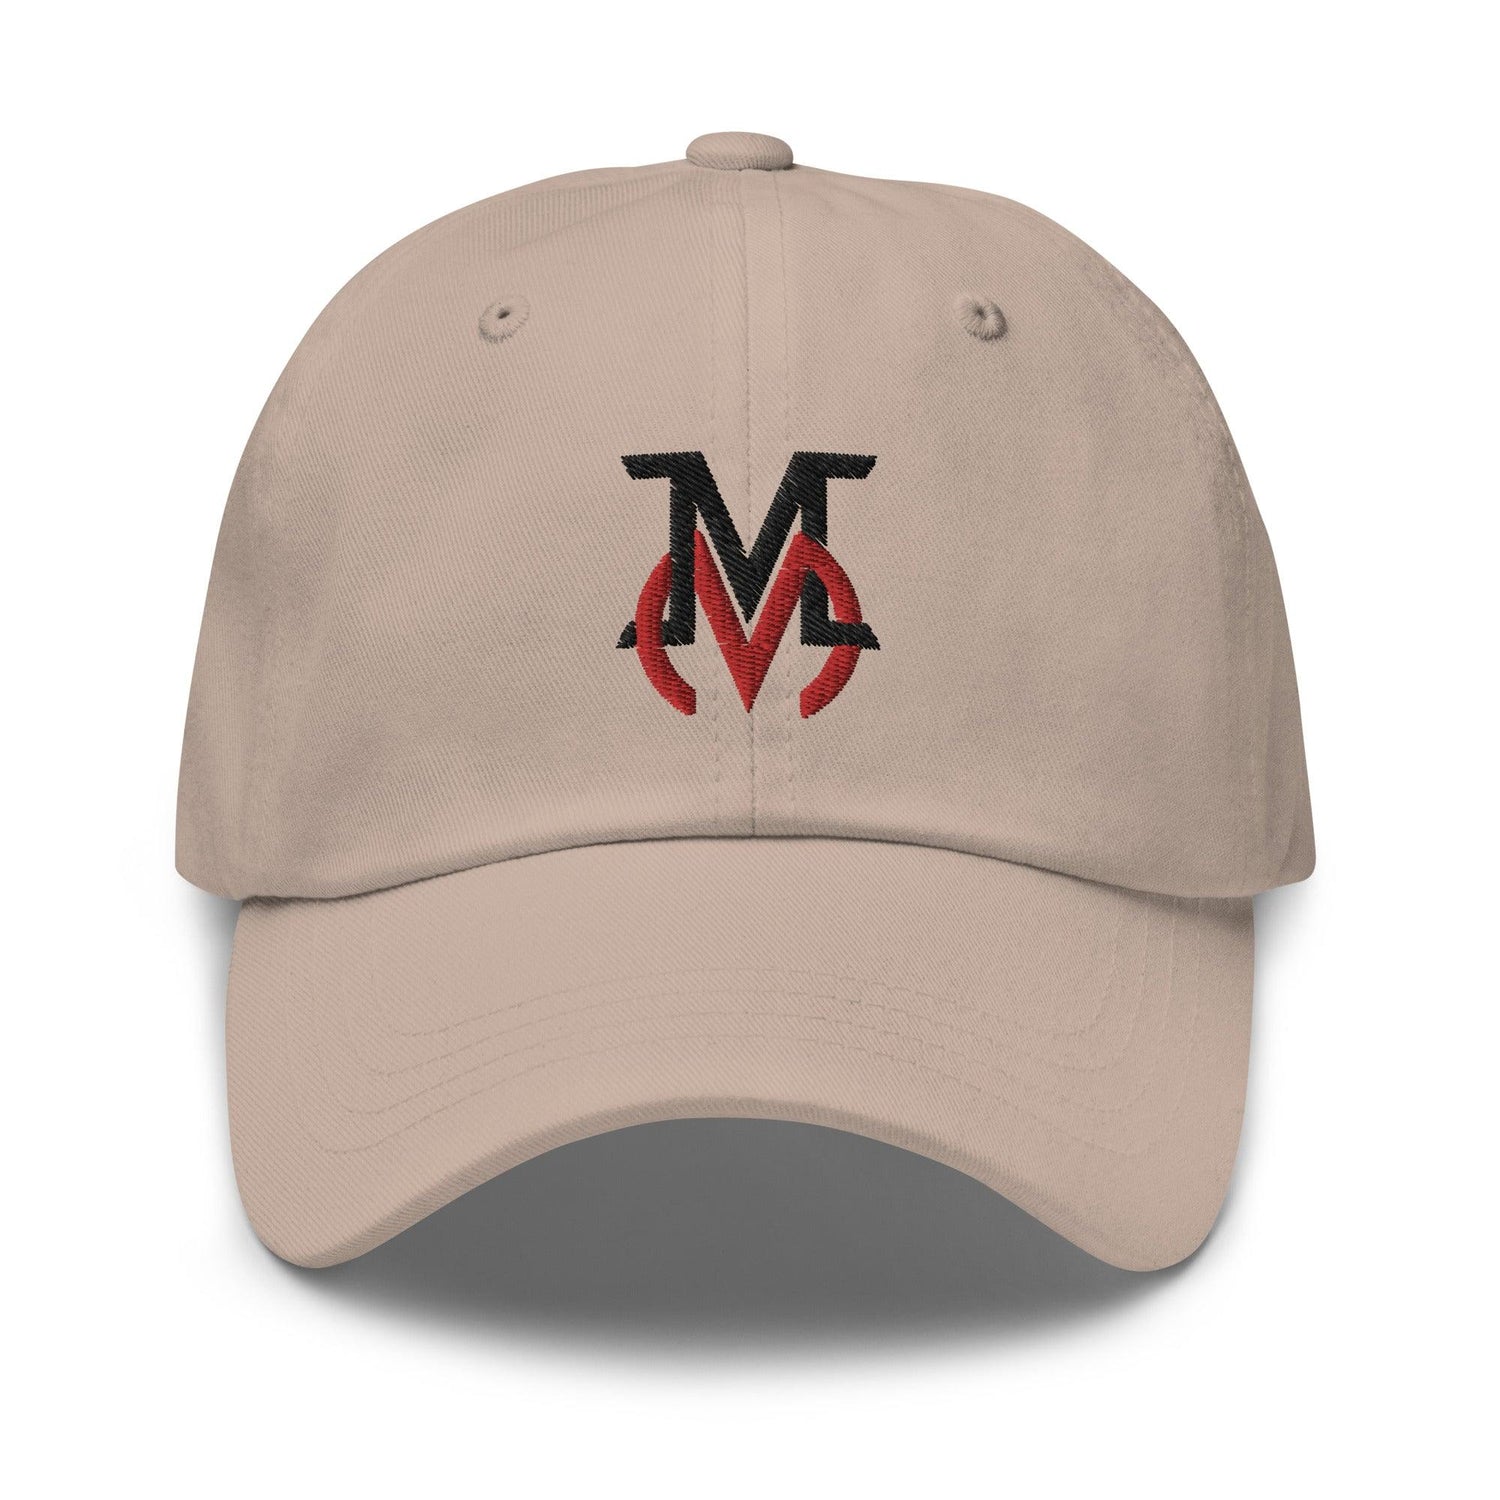 Mike Minor "Wind Up" hat - Fan Arch